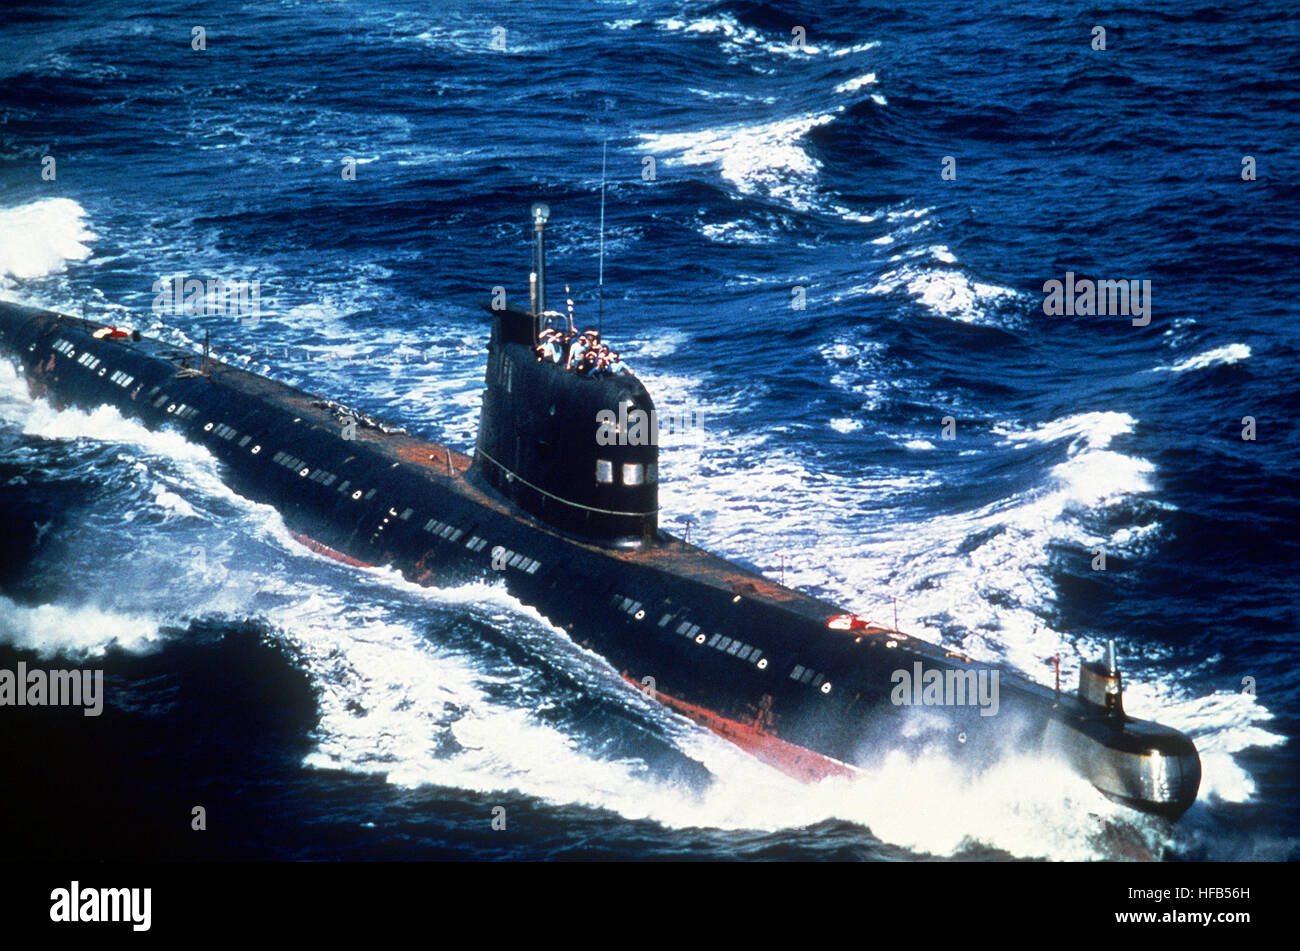 Un cubano-soviético construido Foxtrot clase submarino de patrulla en marcha. Foxtrot submarino cubano Foto de stock